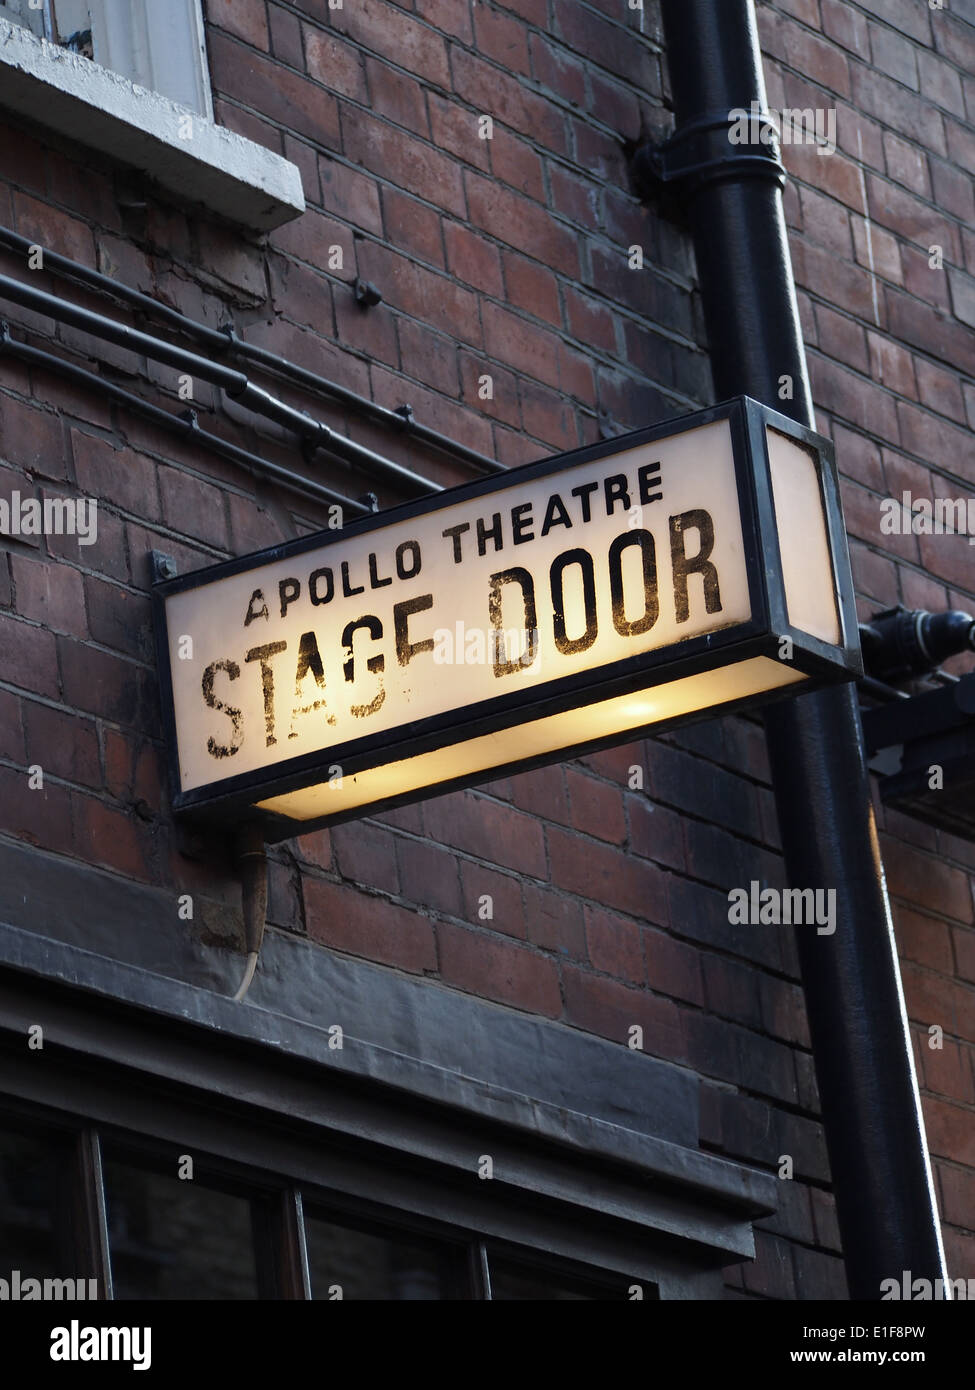 Theatre stage door sign Stock Photo